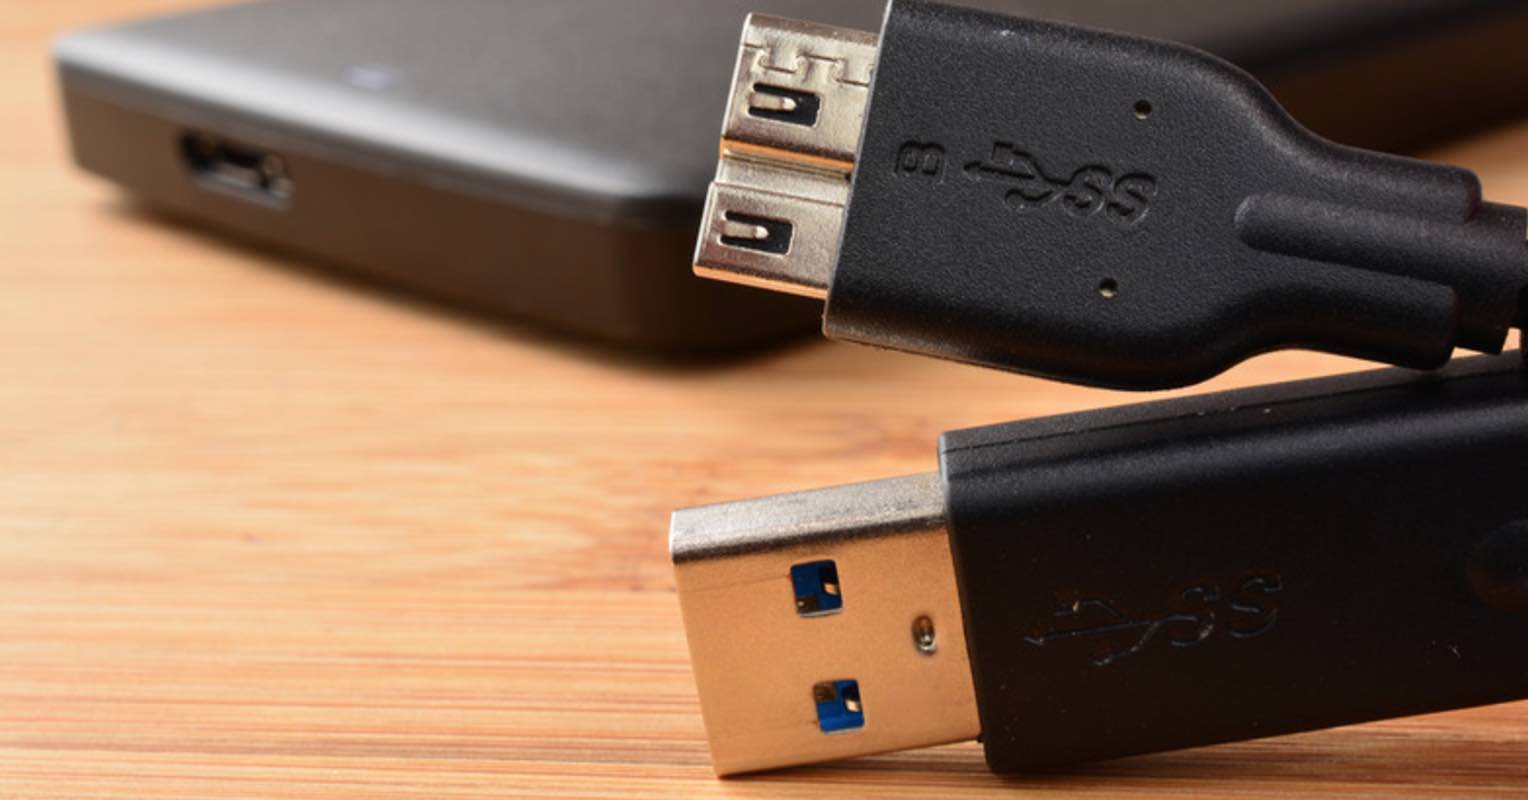 phân biệt giữa chuẩn USB 3.0 và USB 2.0 